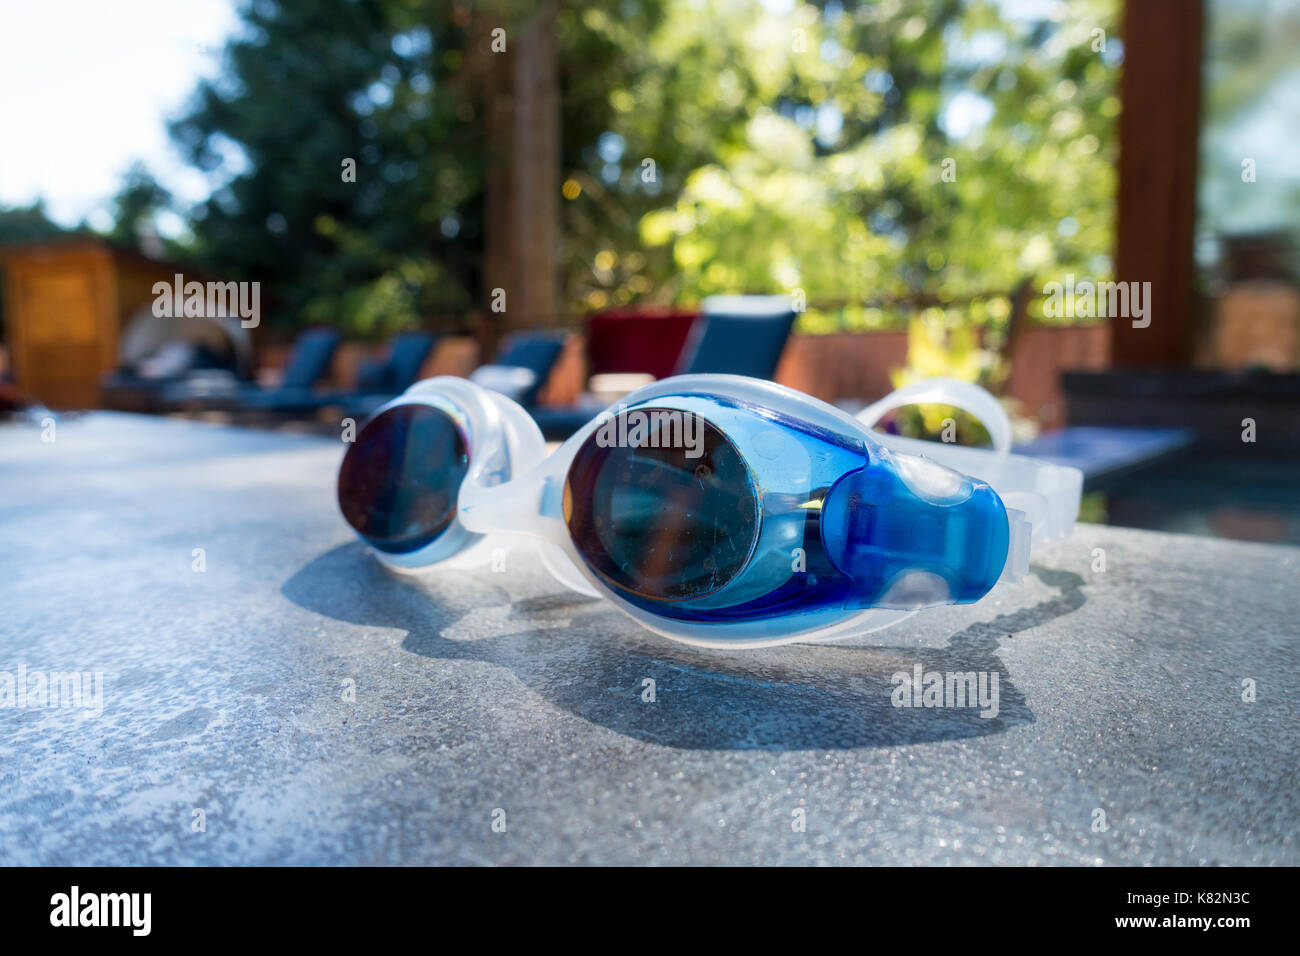 Primer plano de un par de gafas de natación en el borde de una piscina al aire libre Foto de stock